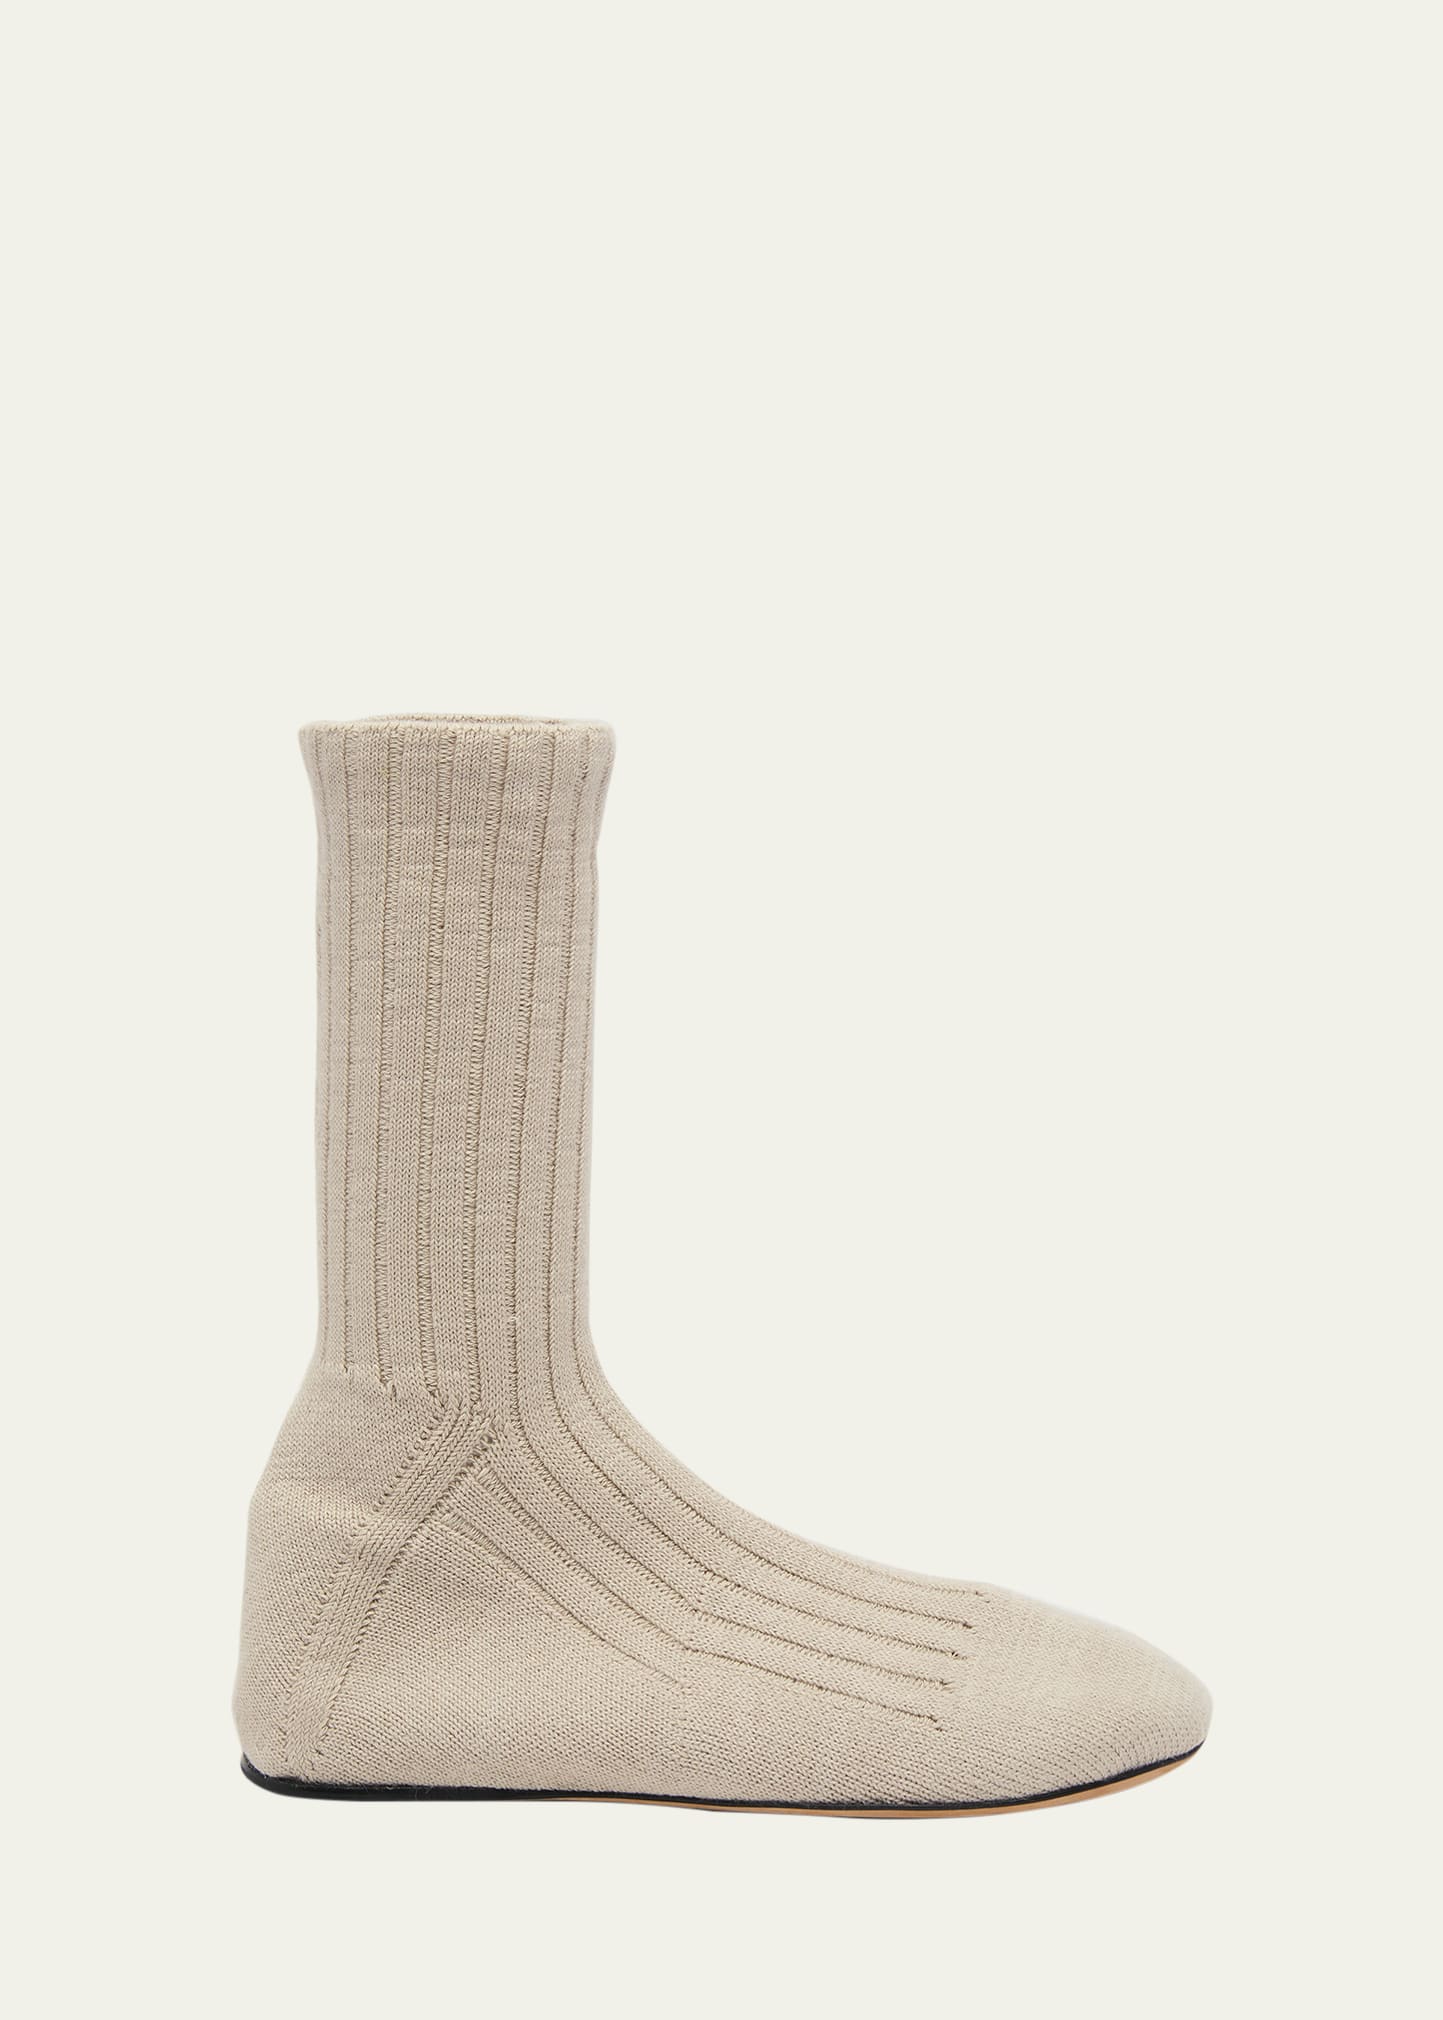 Bottega Veneta Men's Domenica Knit Sock Boots In Straw